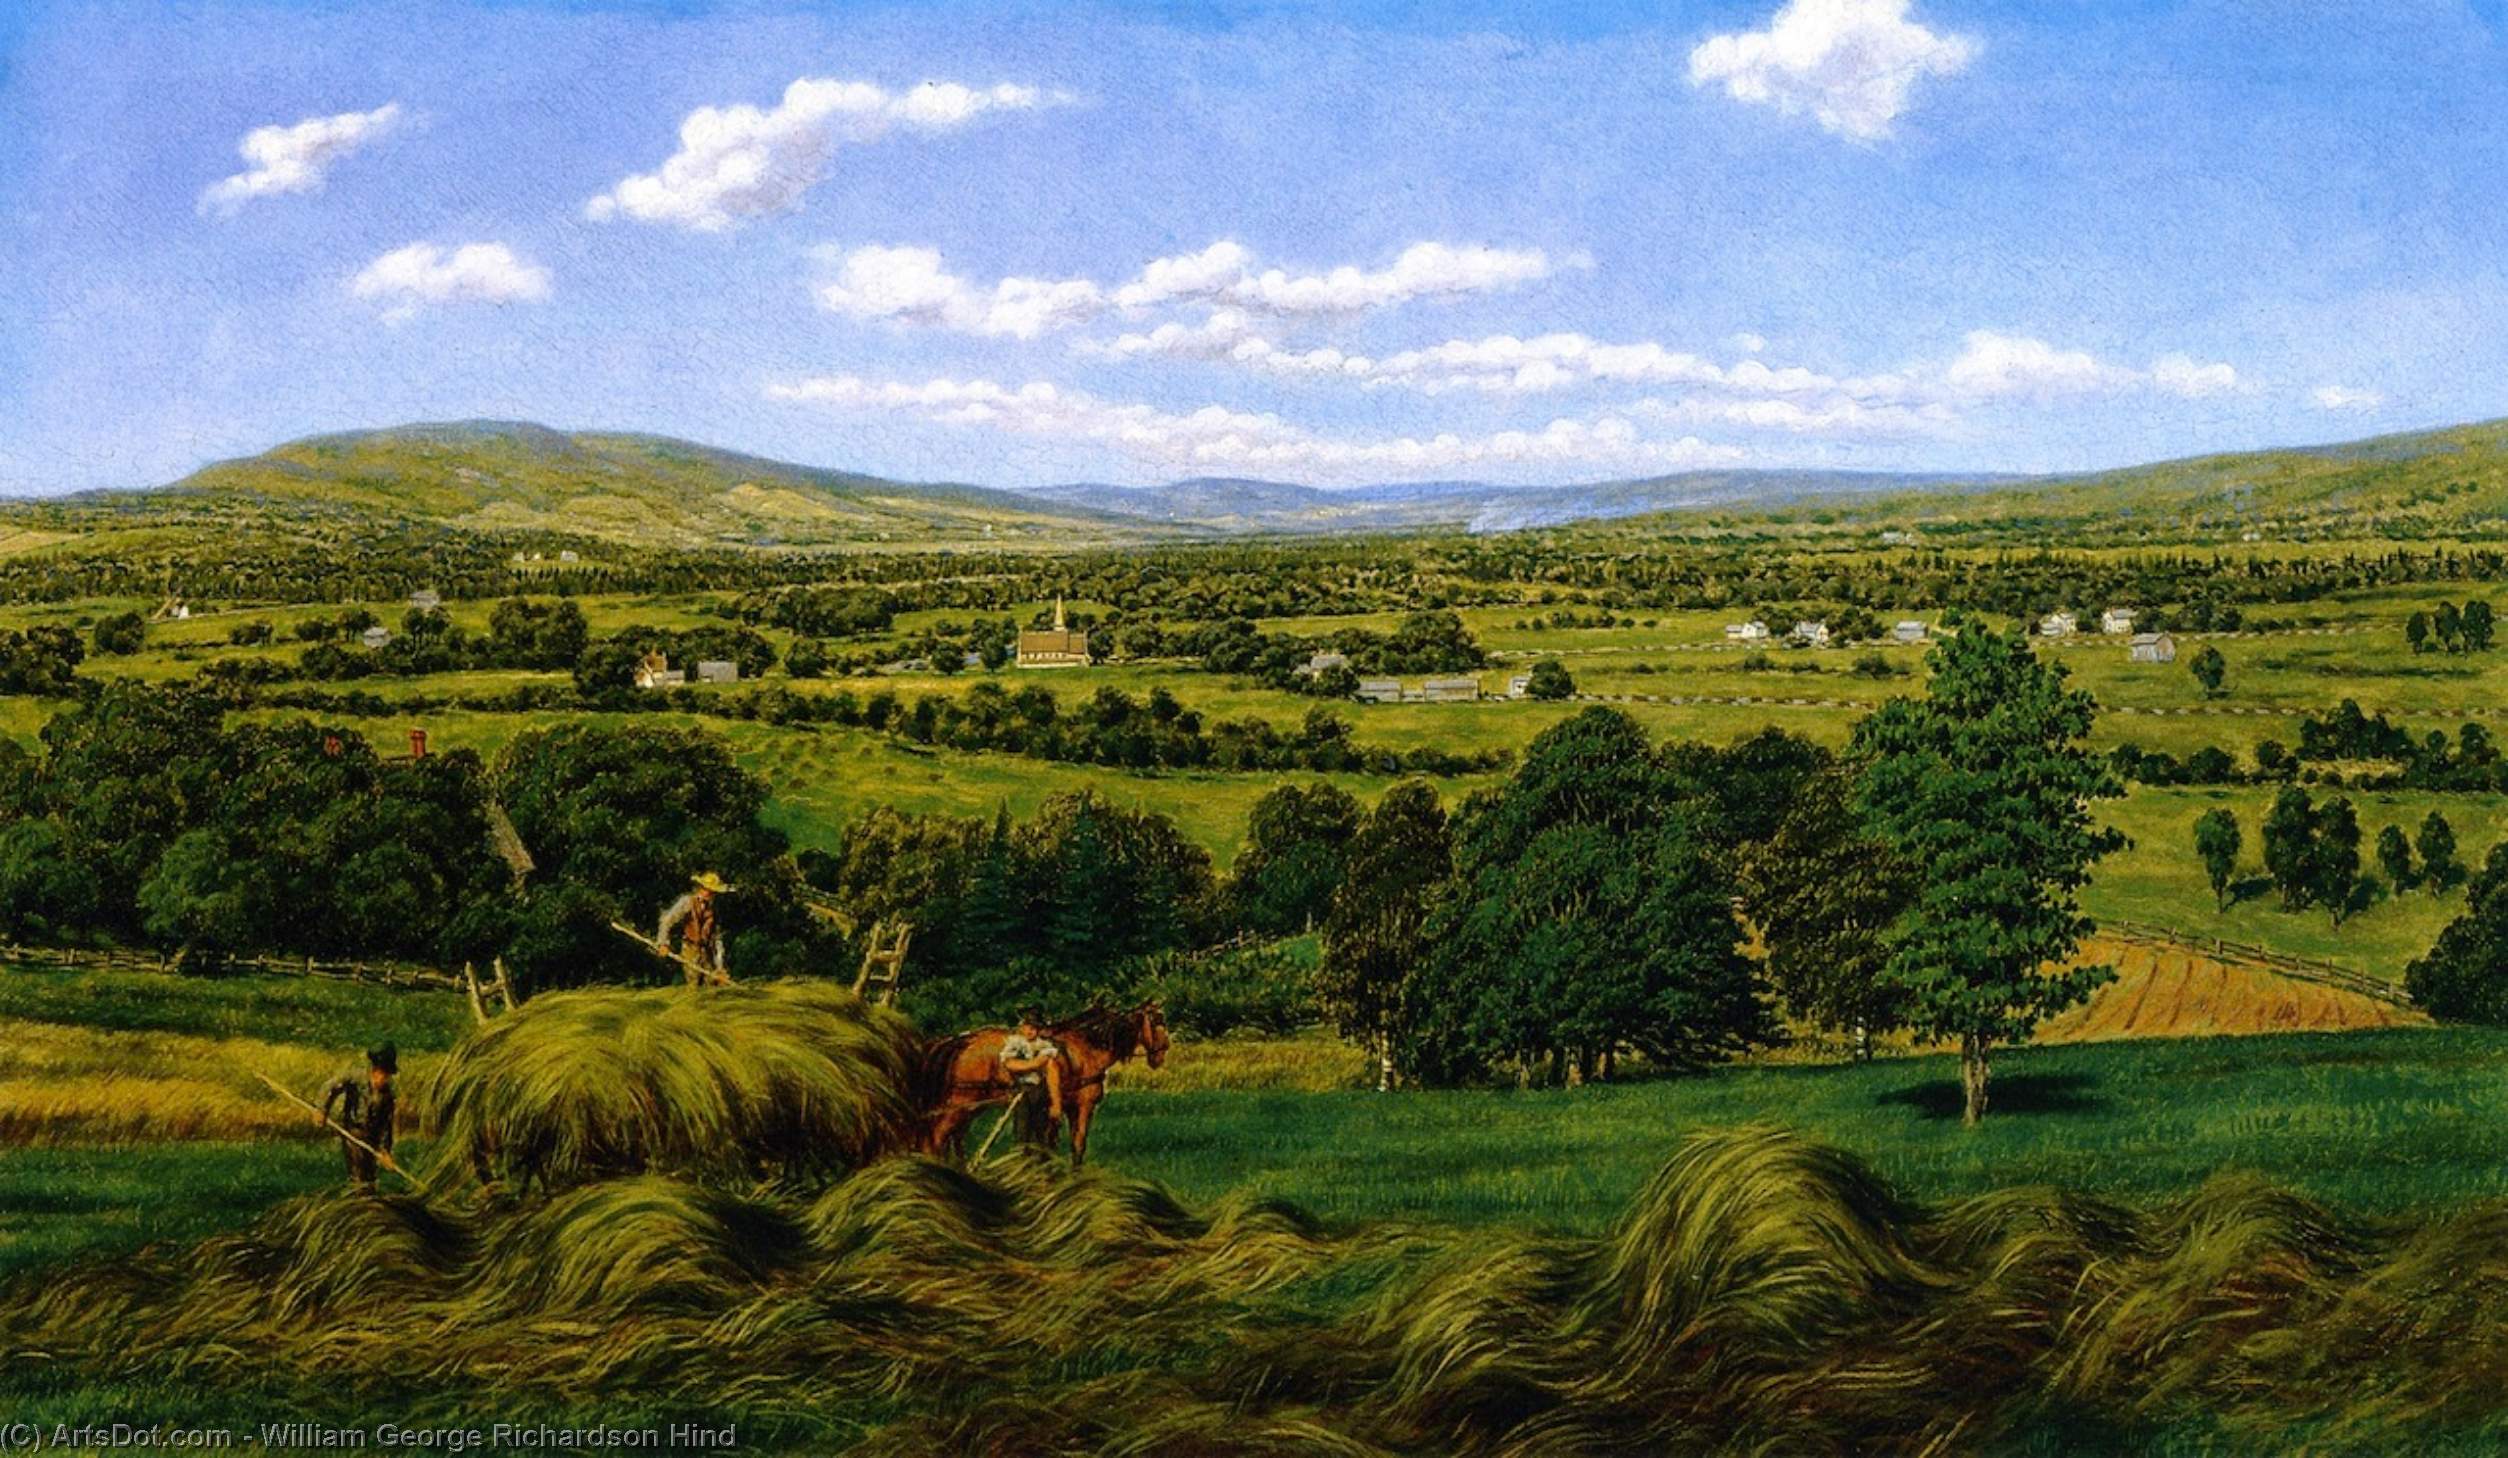 Compra Riproduzioni D'arte Del Museo Vendere il Hay, Sussex, N. B., 1870 di William George Richardson Hind (1833-1889, United Kingdom) | ArtsDot.com